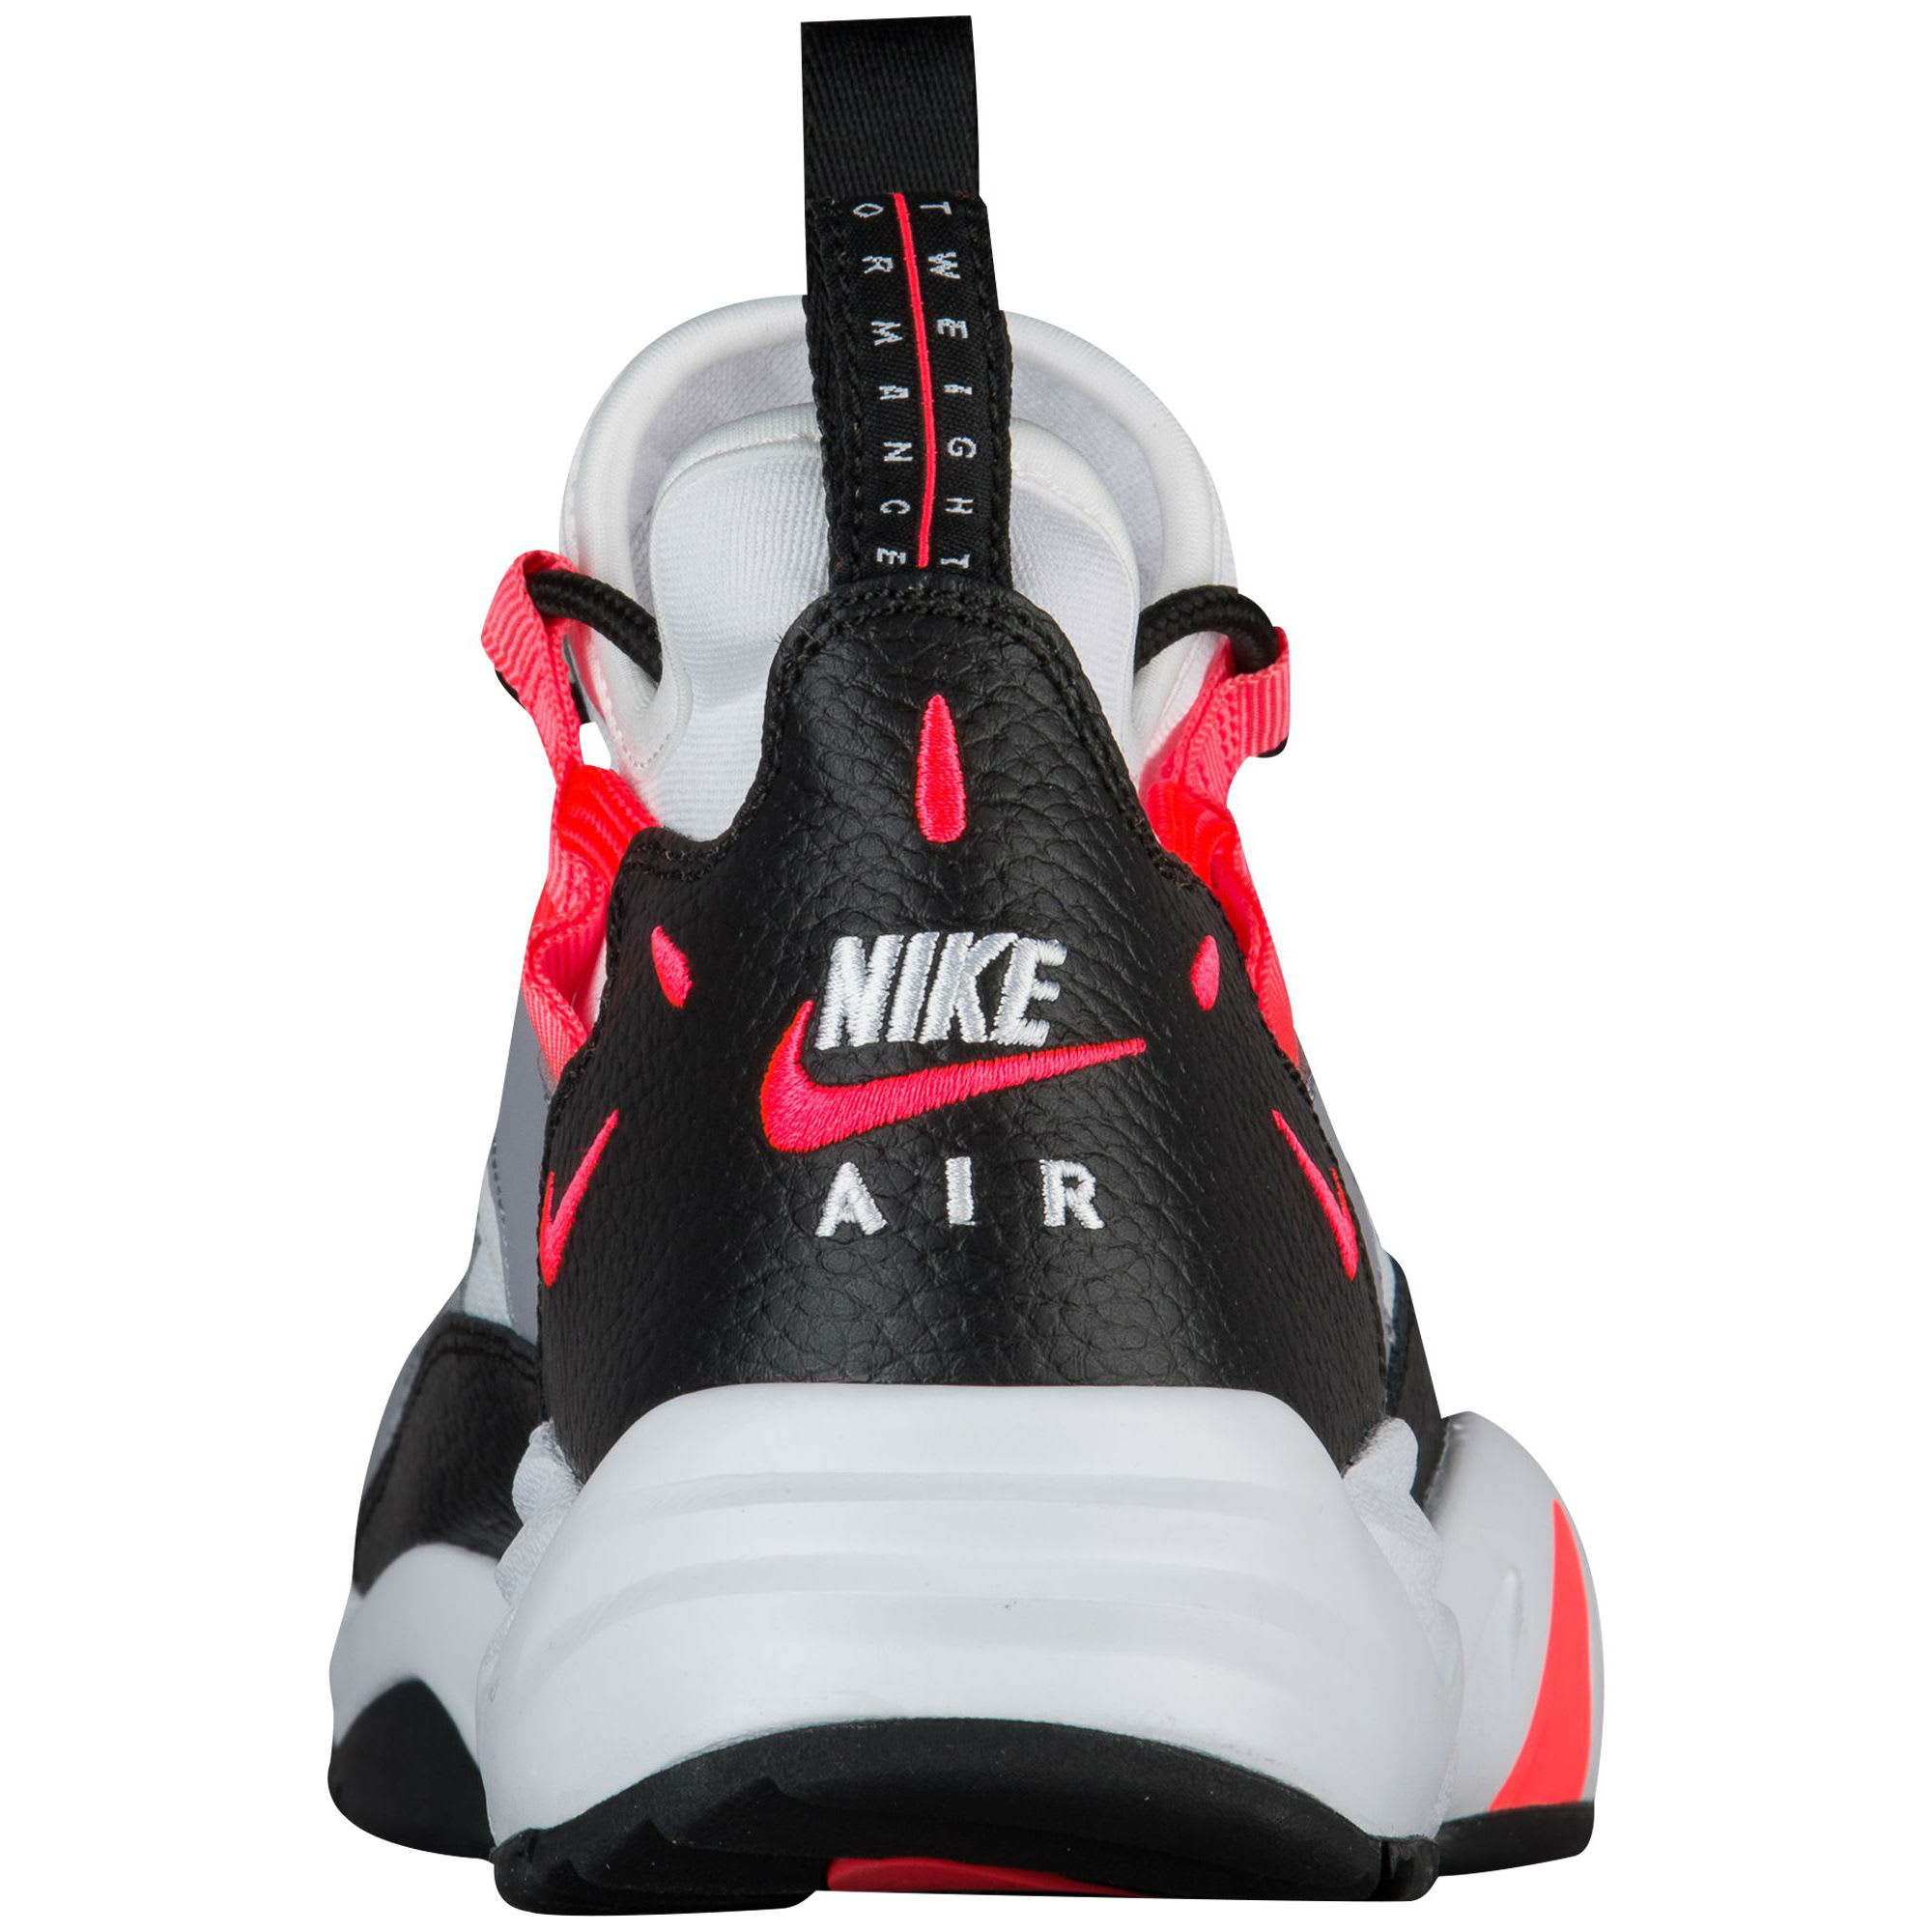 Nike Air Scream LWP Infrared Release Date AH8417-002 Heel